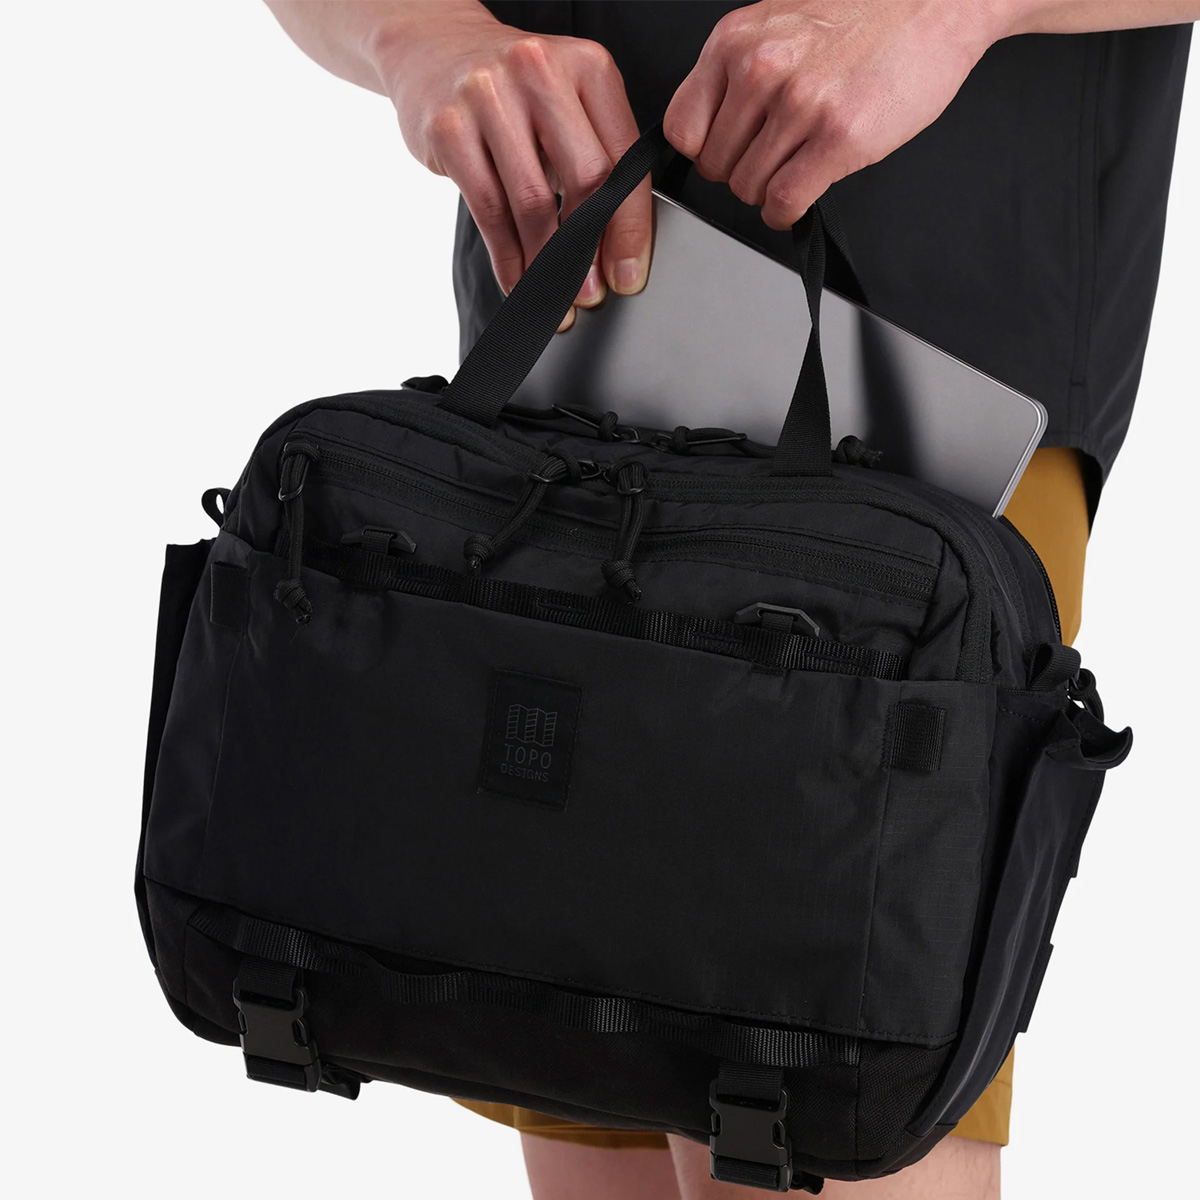 Topo Designs Mountain Cross Bag Black, met een interne laptop sleeve (13 inch)